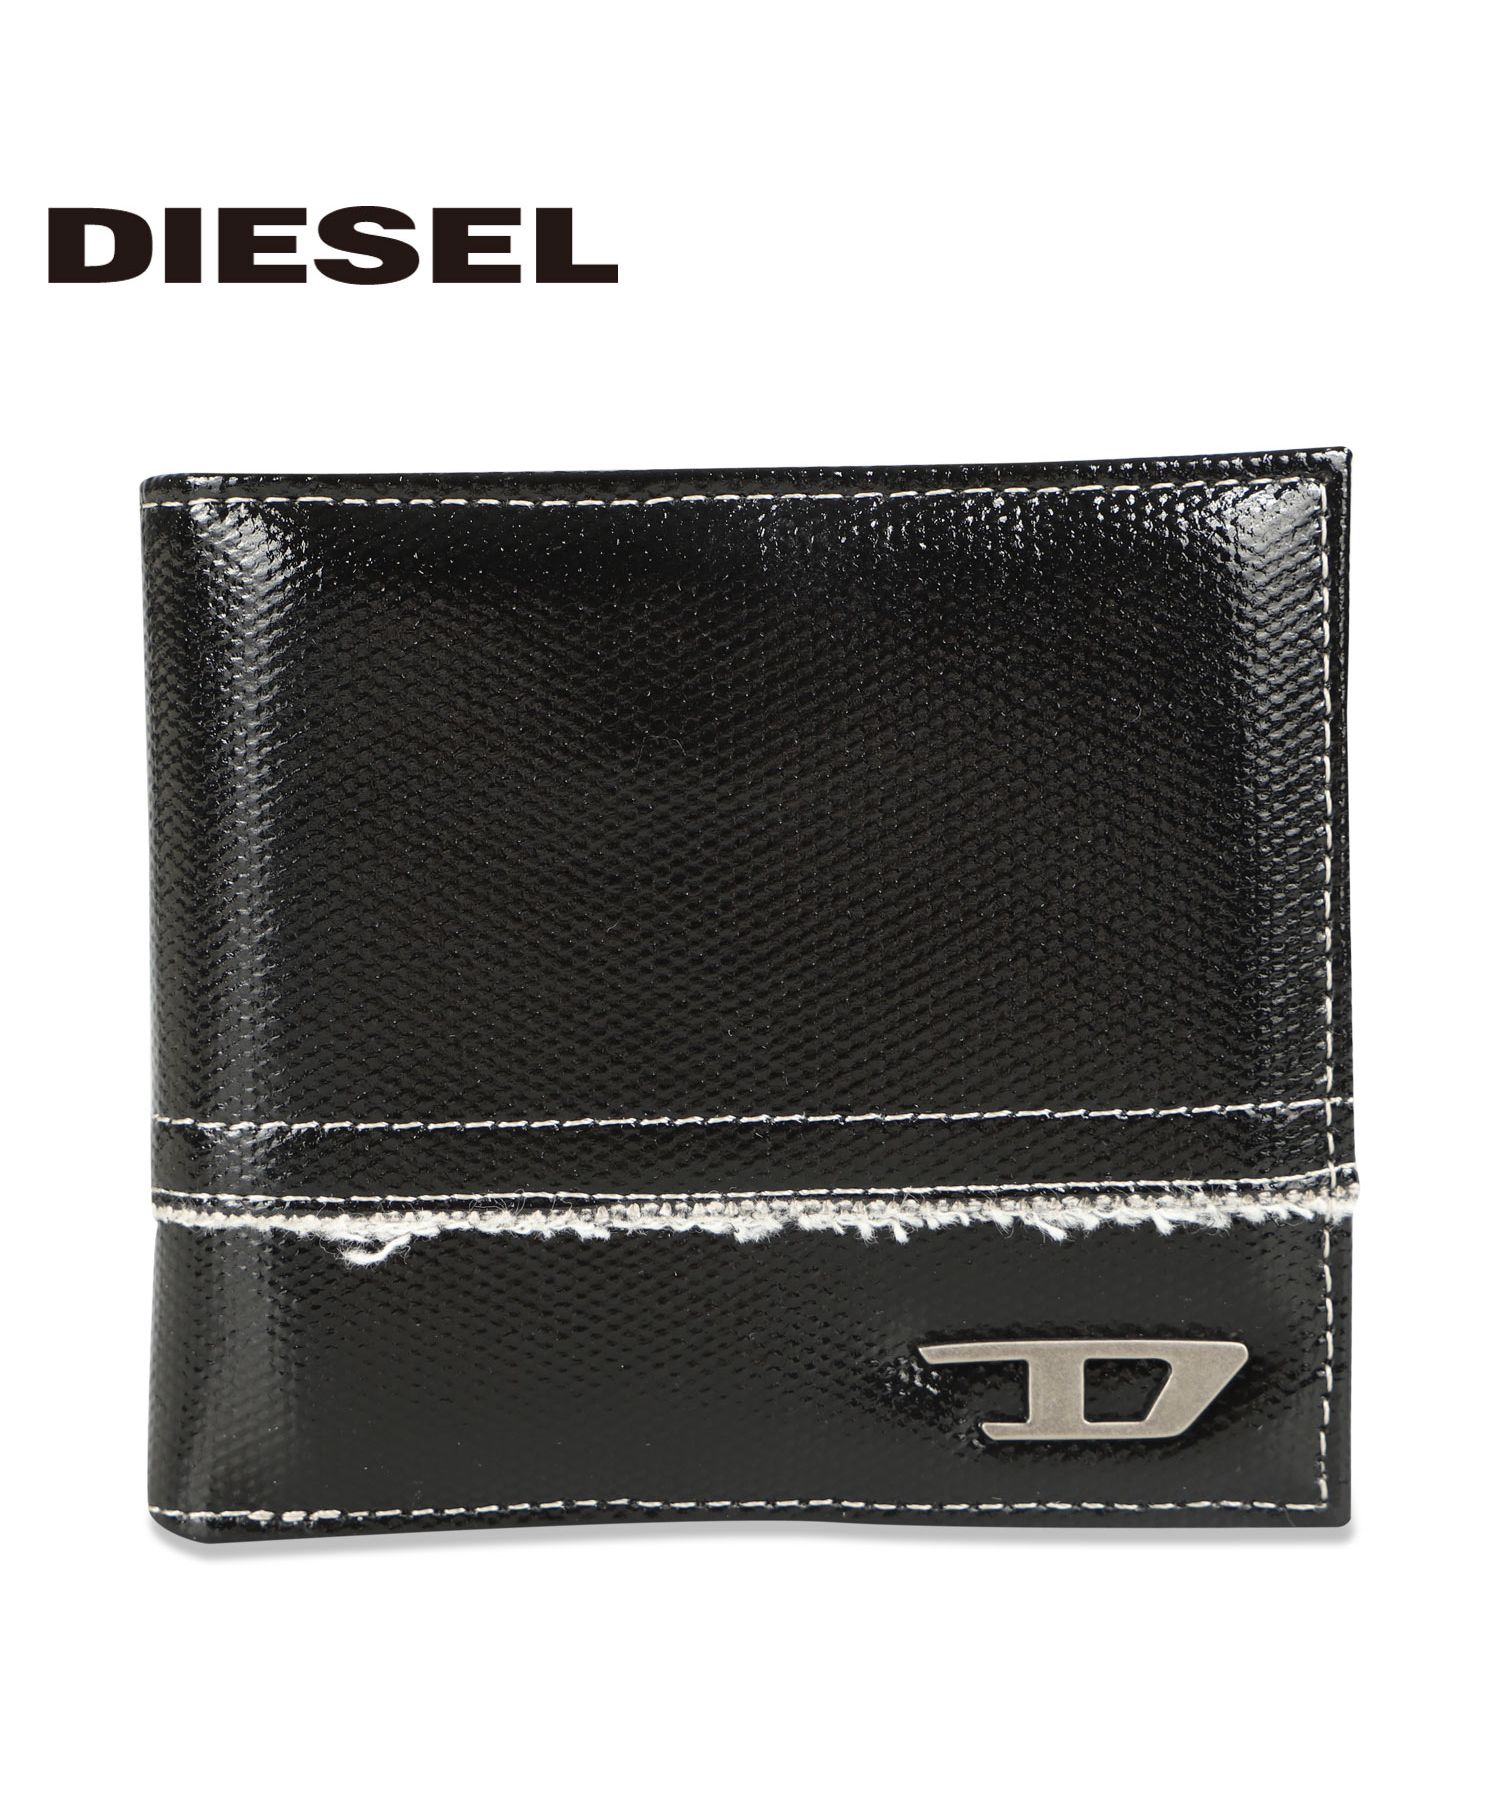 ディーゼルのmen's財布